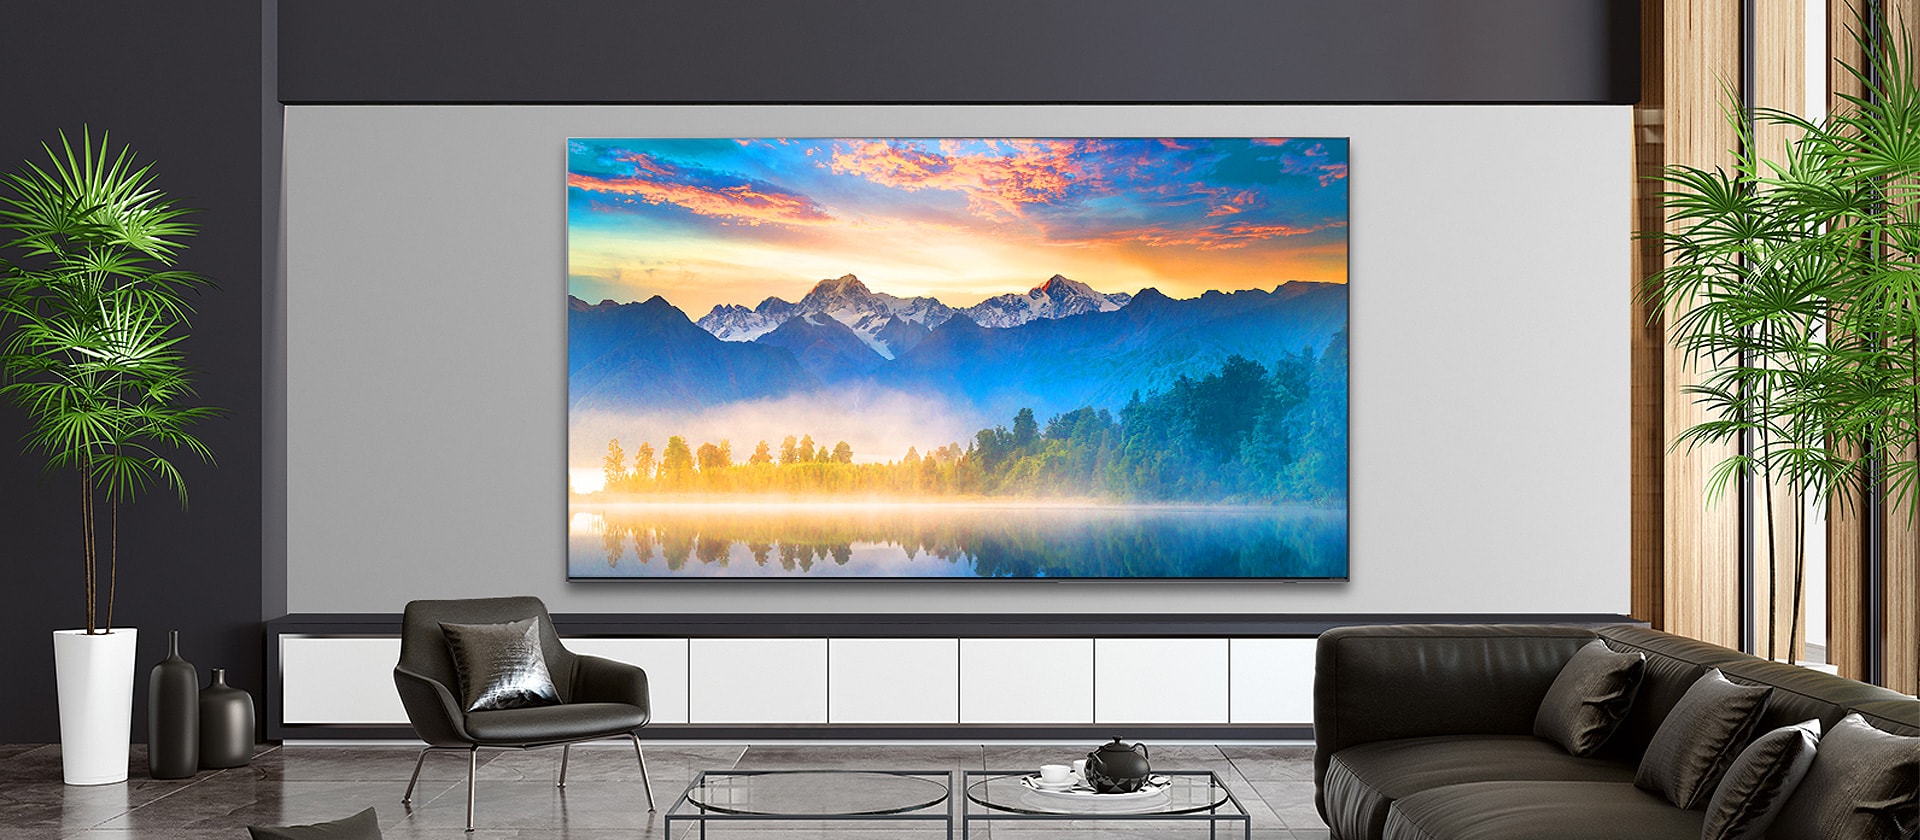 غرفة معيشة بها شاشة تلفزيون مثبتة على الحائط تظهر مشهدًا طبيعيًا.